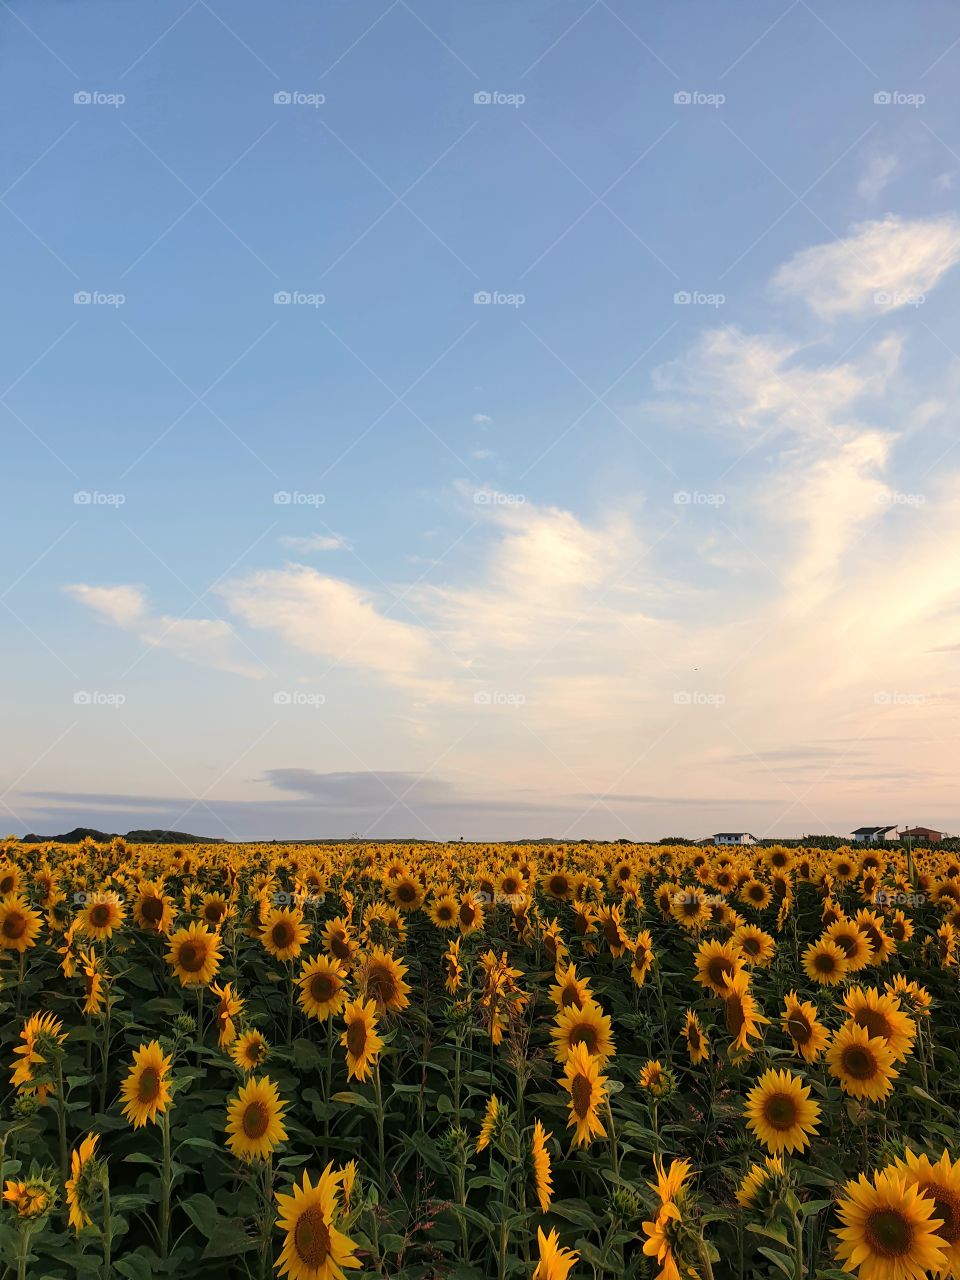 Sunflower Field near beach at sunset of a summer day